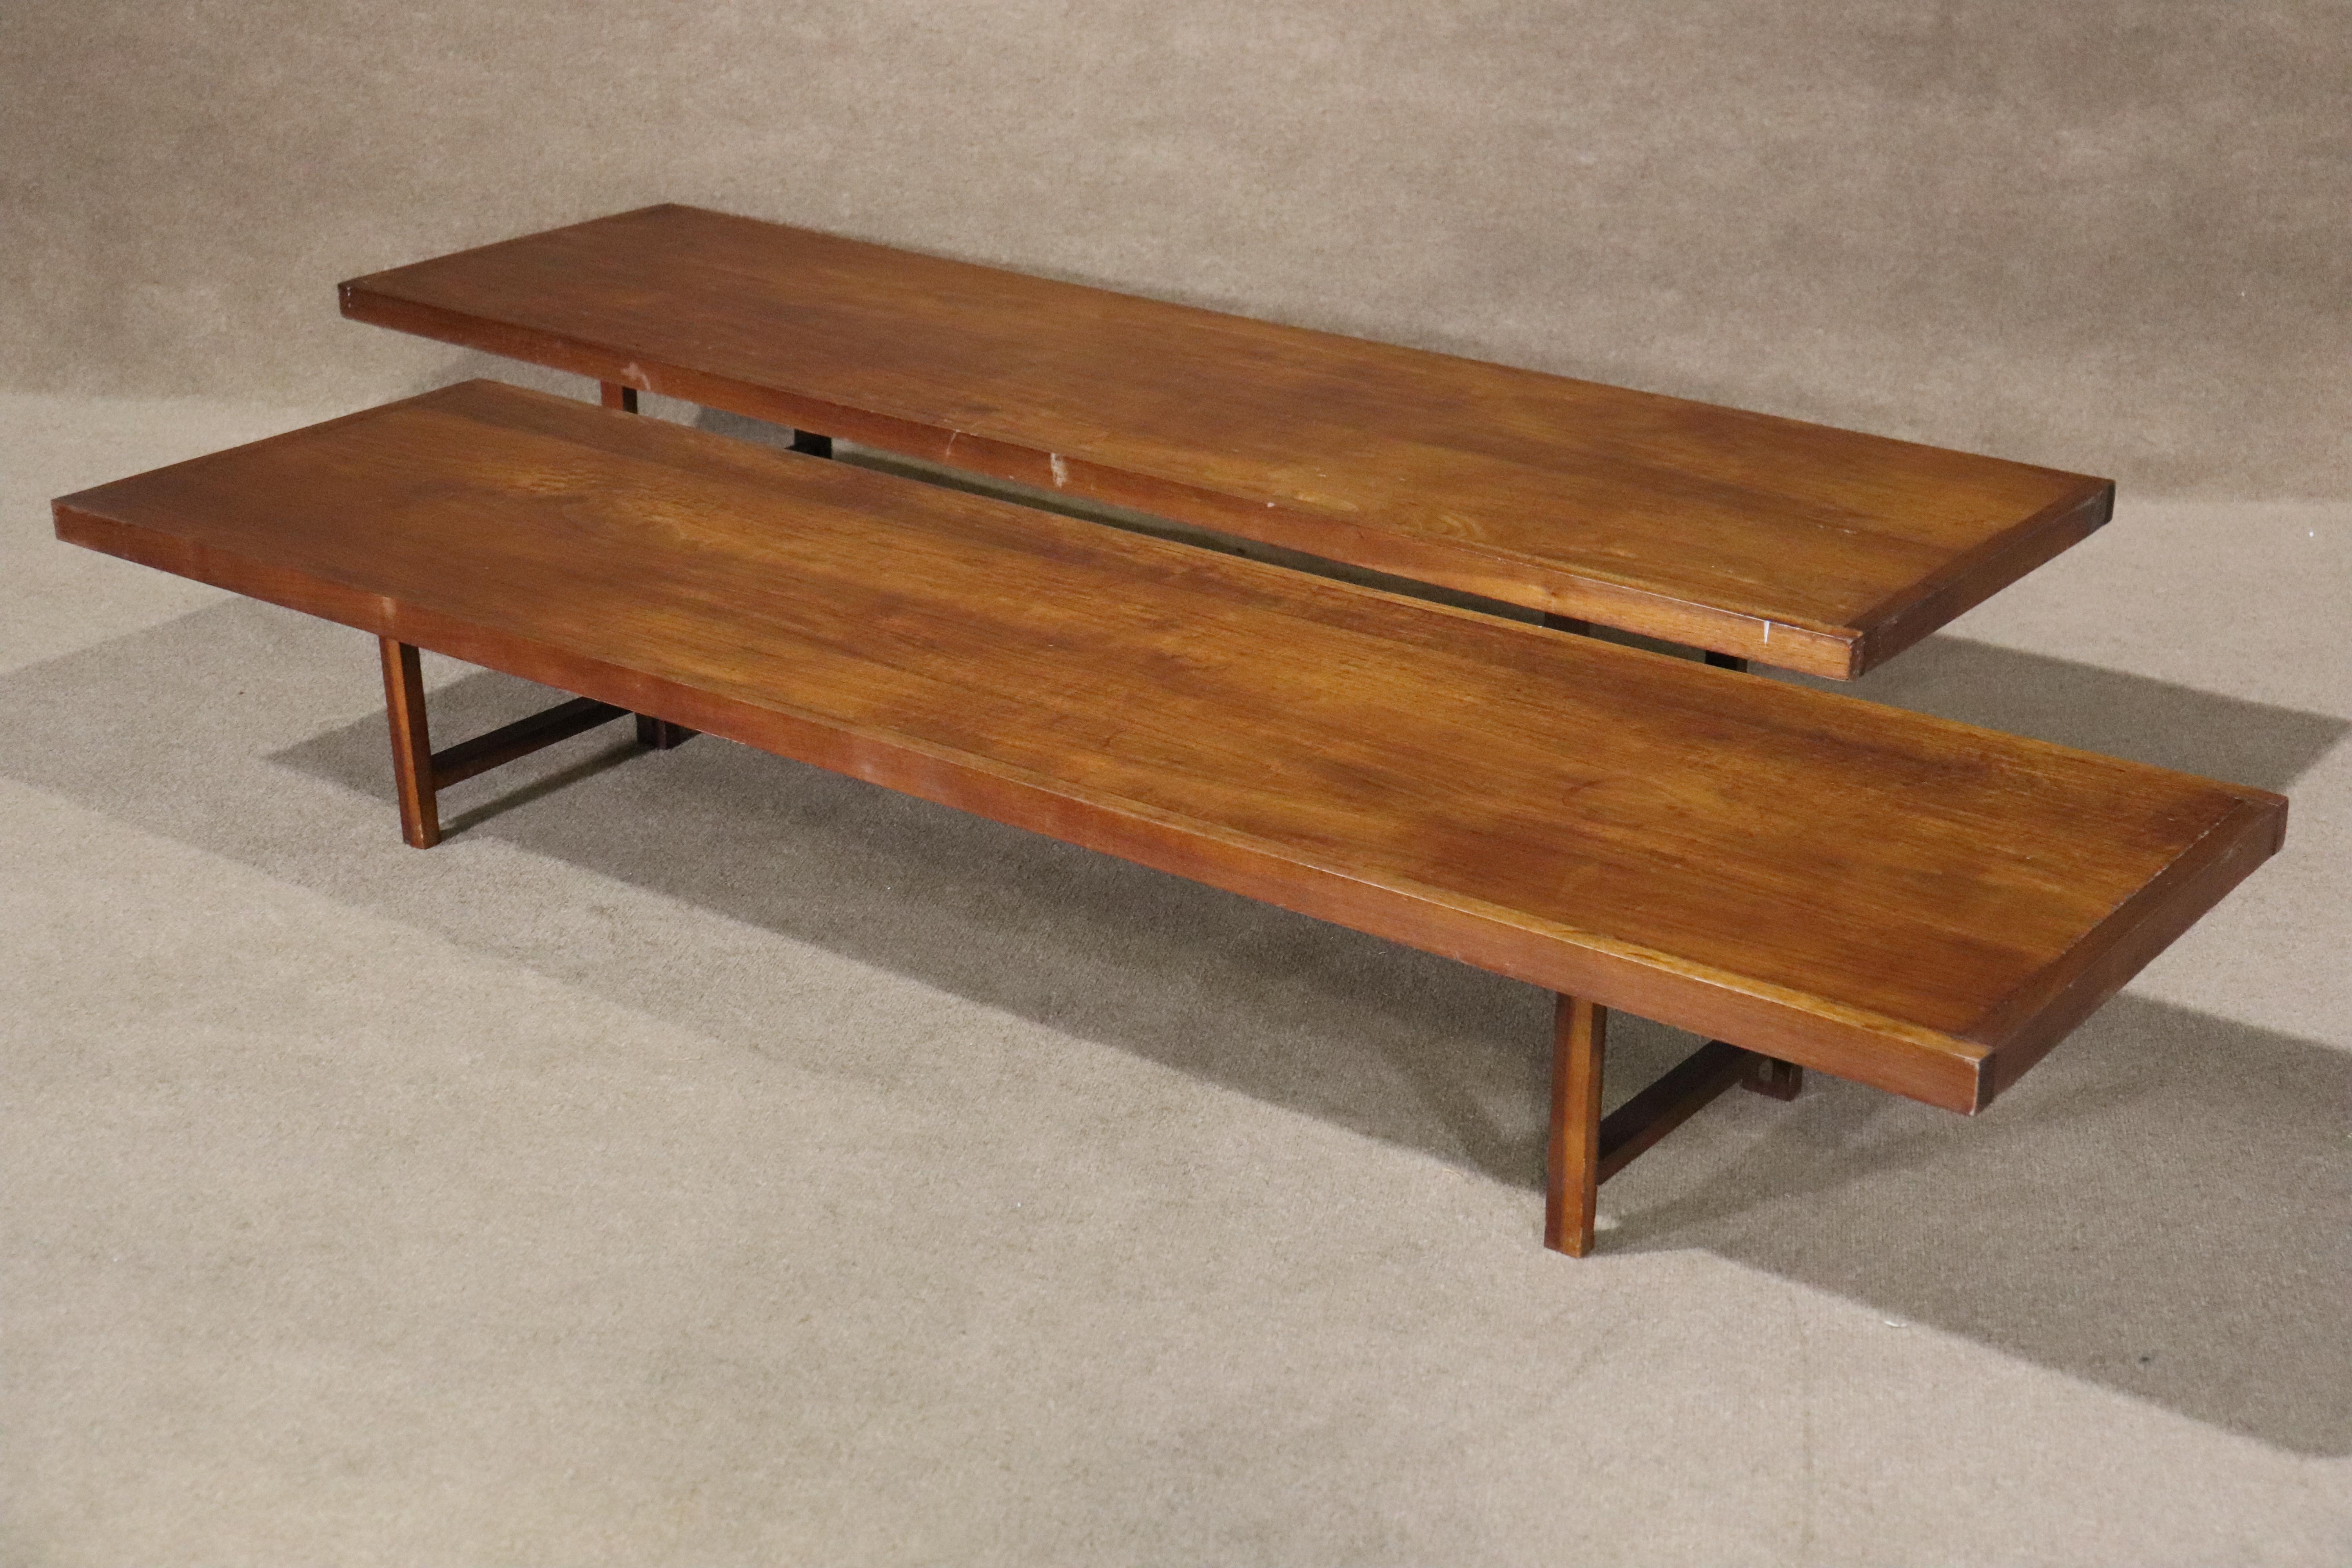 Extra langer dänischer Couchtisch. Dieser Tisch, der dem Entwurf von Torbjørn Afdal sehr ähnlich ist, ist einfach und schön, mit einer einzigen Platte und bockförmigen Beinen.
Die Auflistung gilt für einen einzelnen Tisch.
Bitte bestätigen Sie den